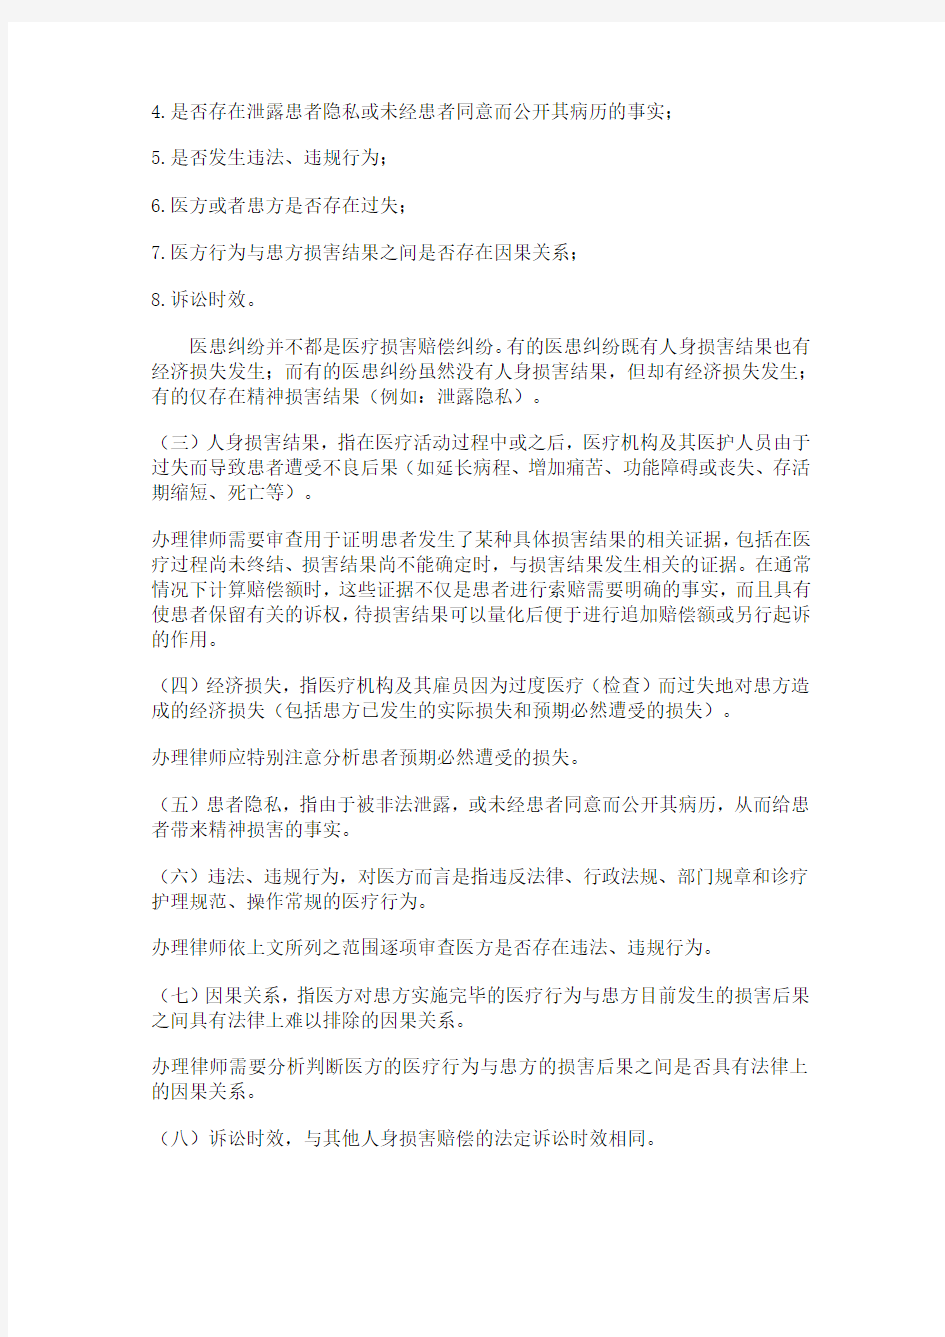 广州律师办理医患纠纷案件业务操作指引